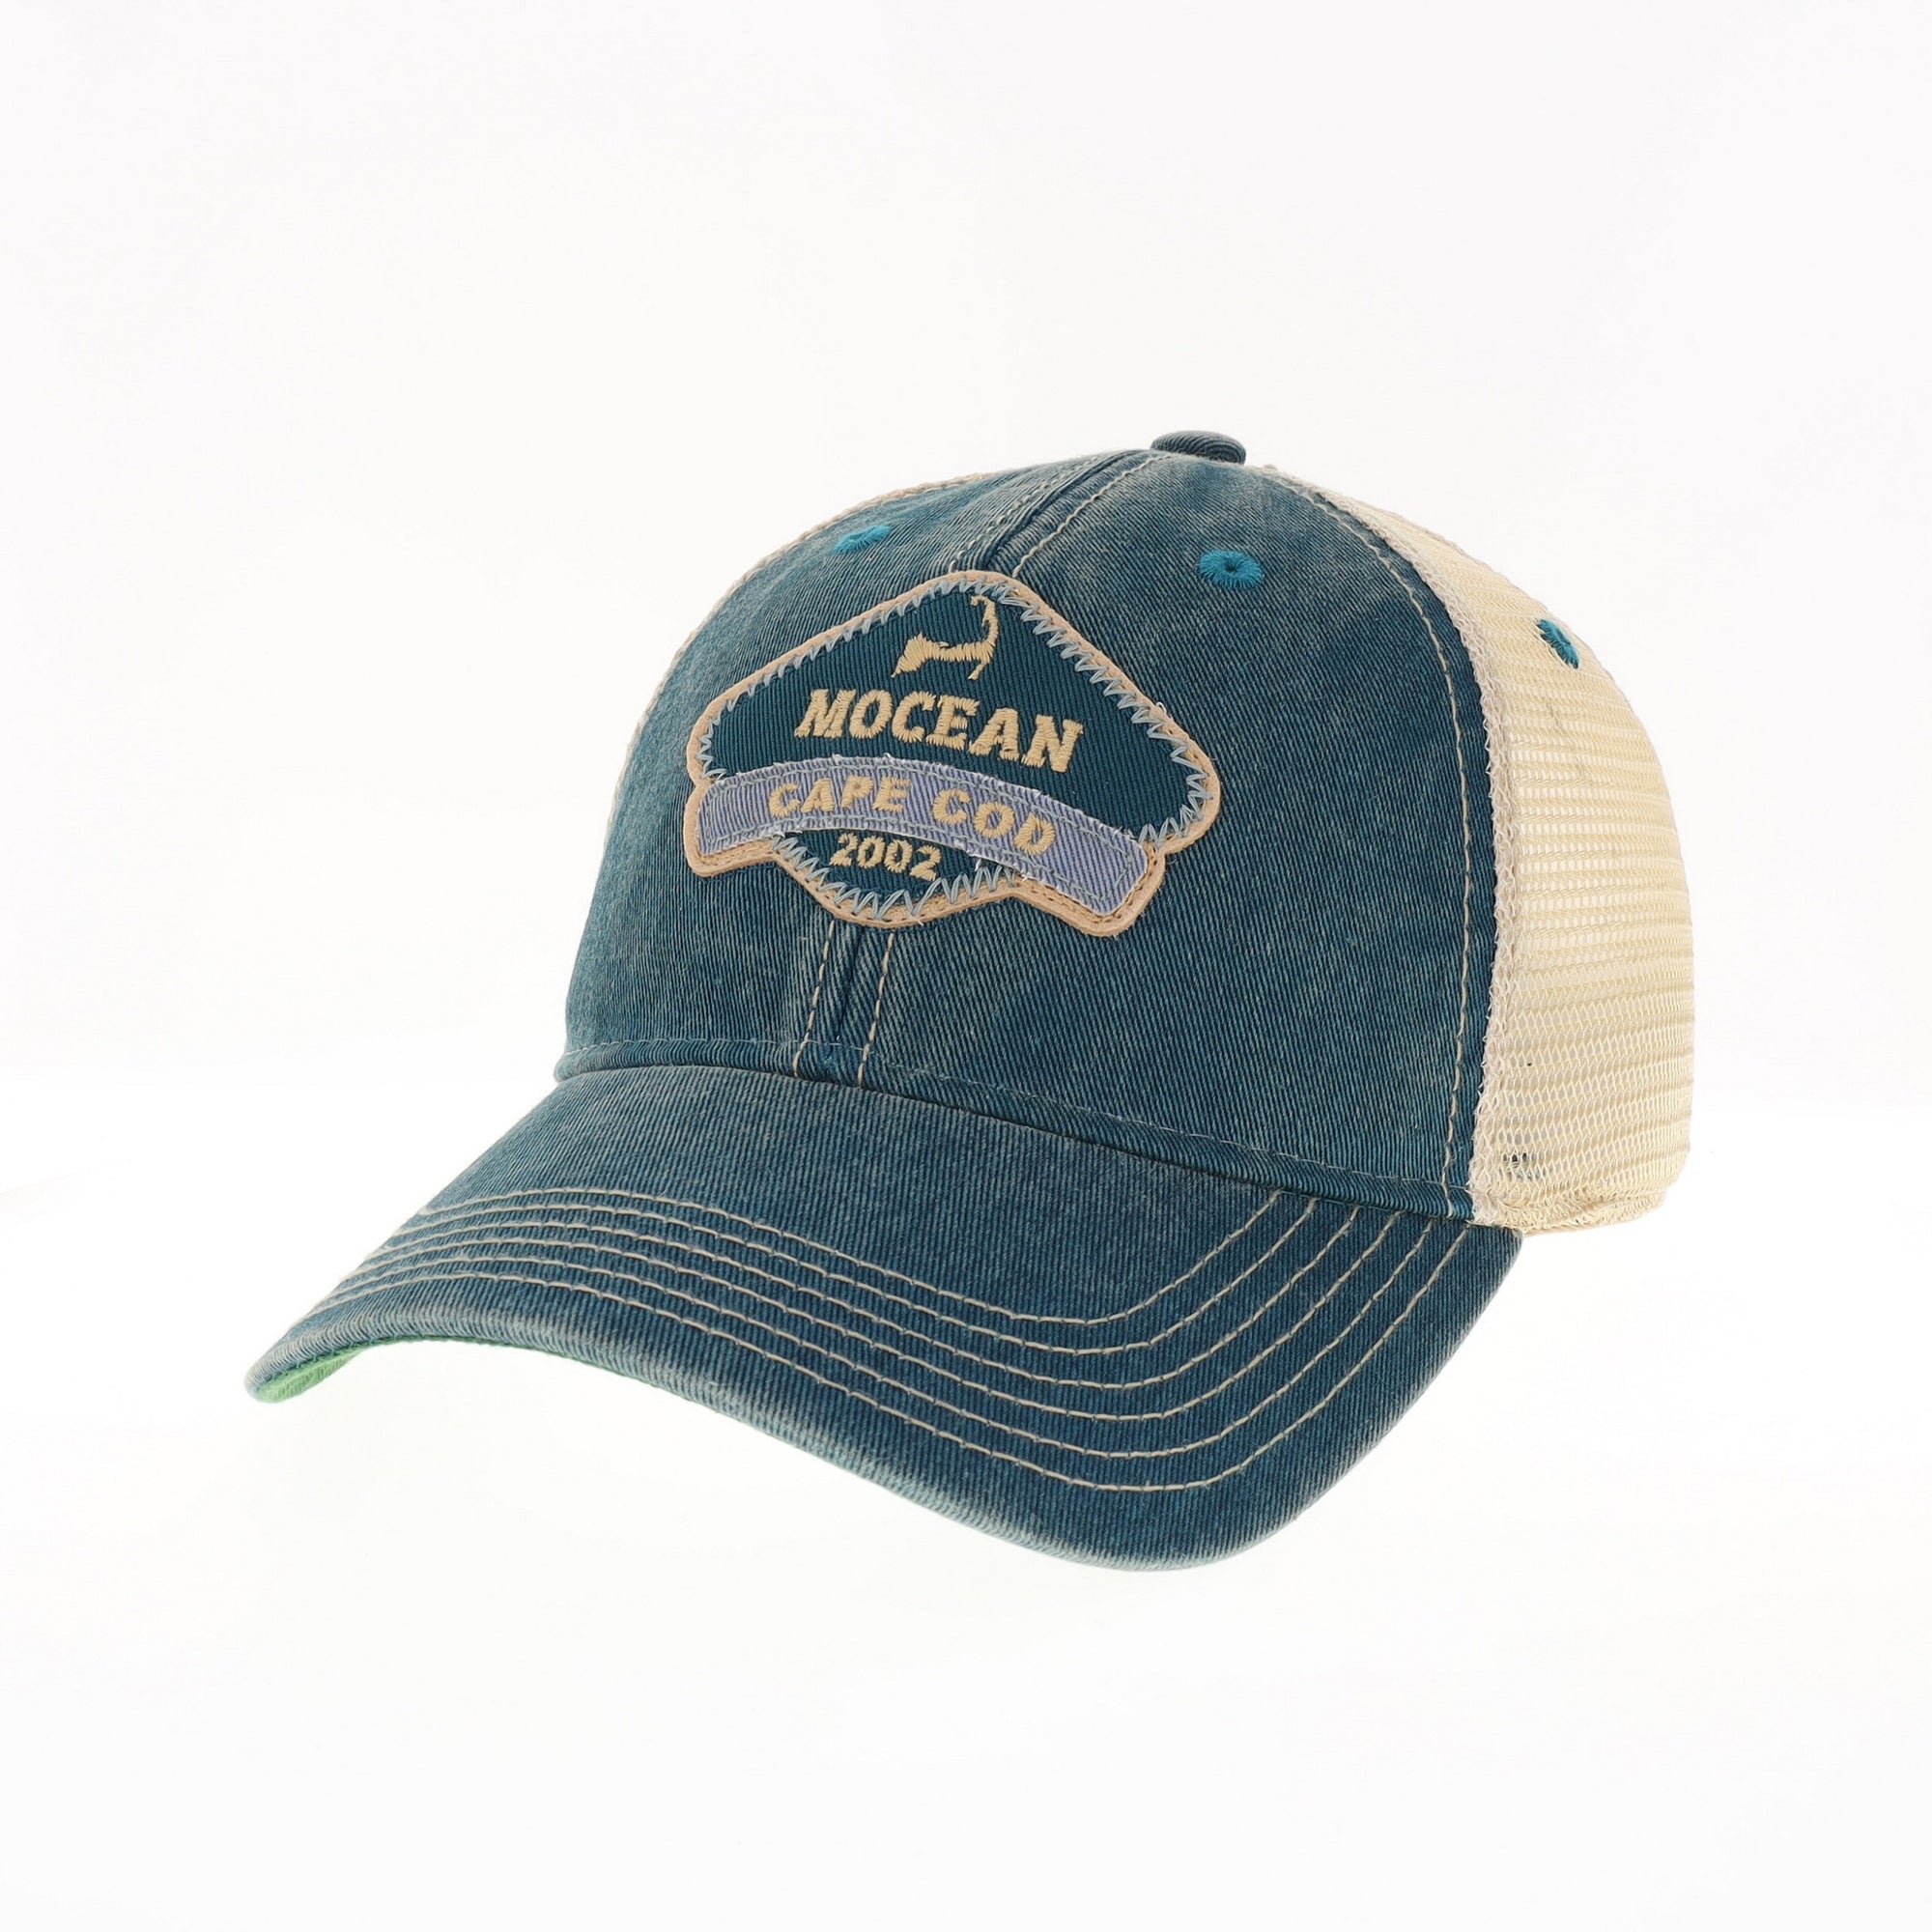 MOCEAN Old Favorite Ziggy Hat